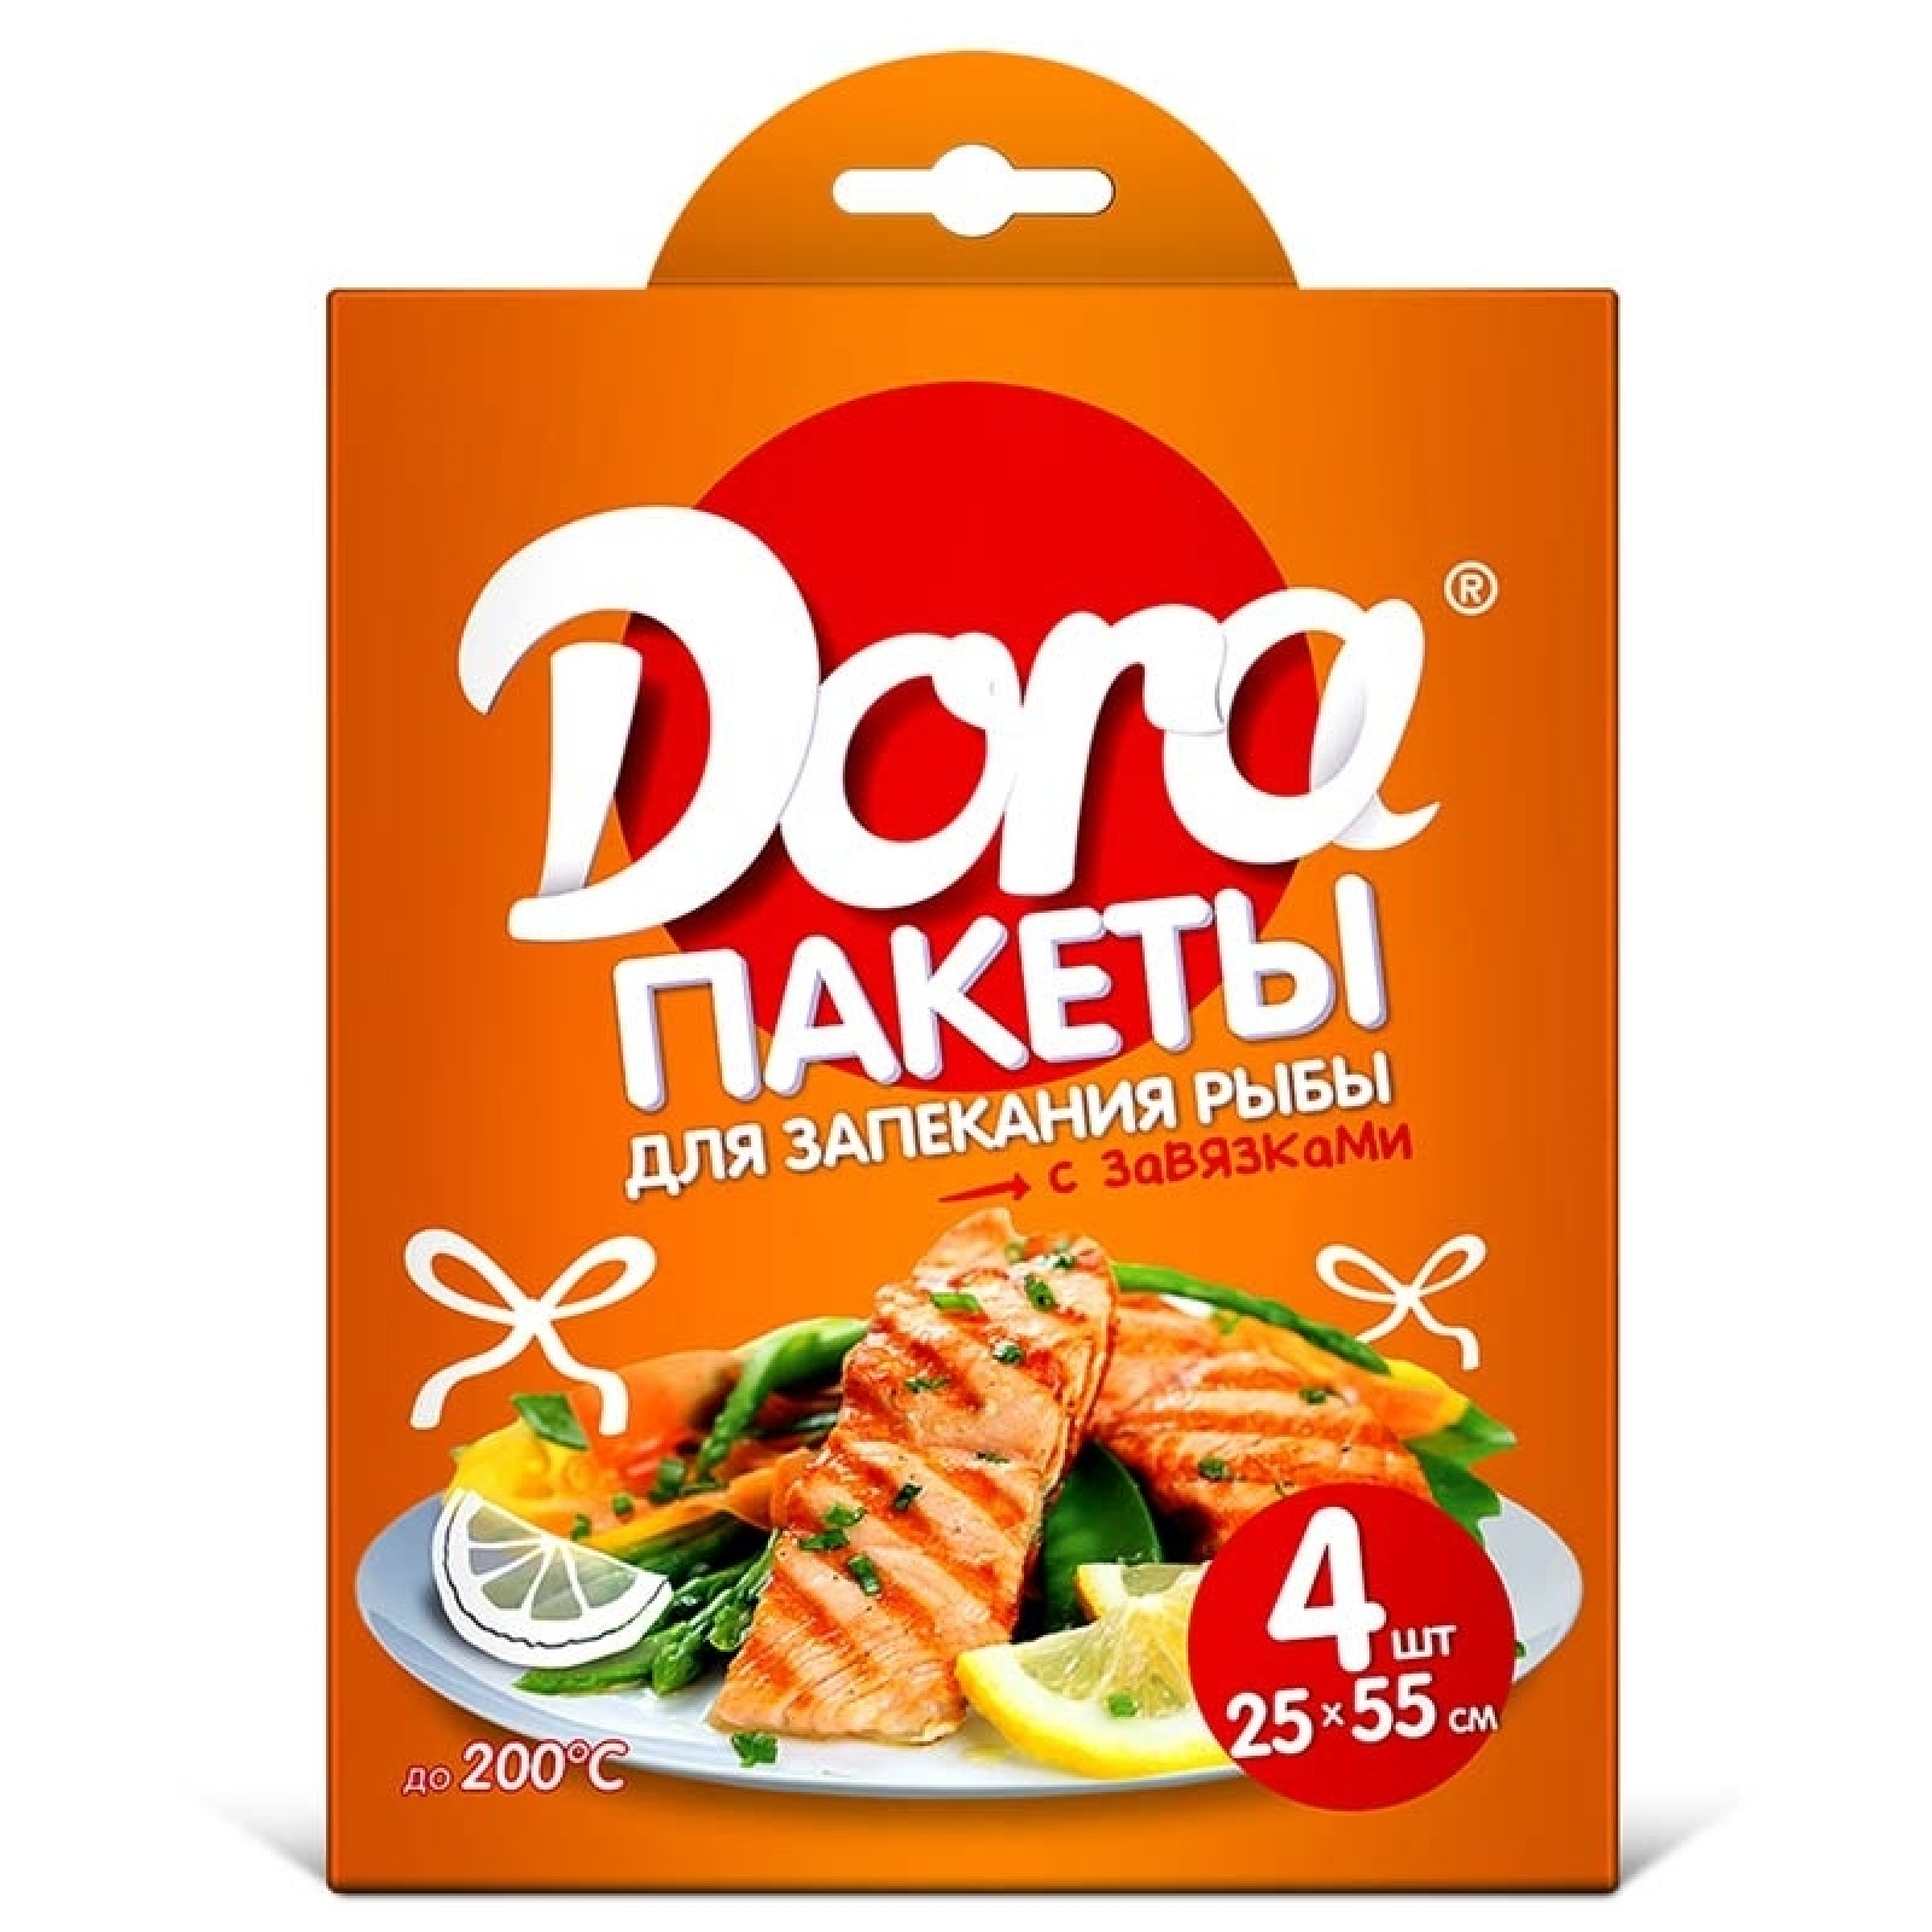 Пакеты для запекания рыбы Dora с завязками, 25см х 55см